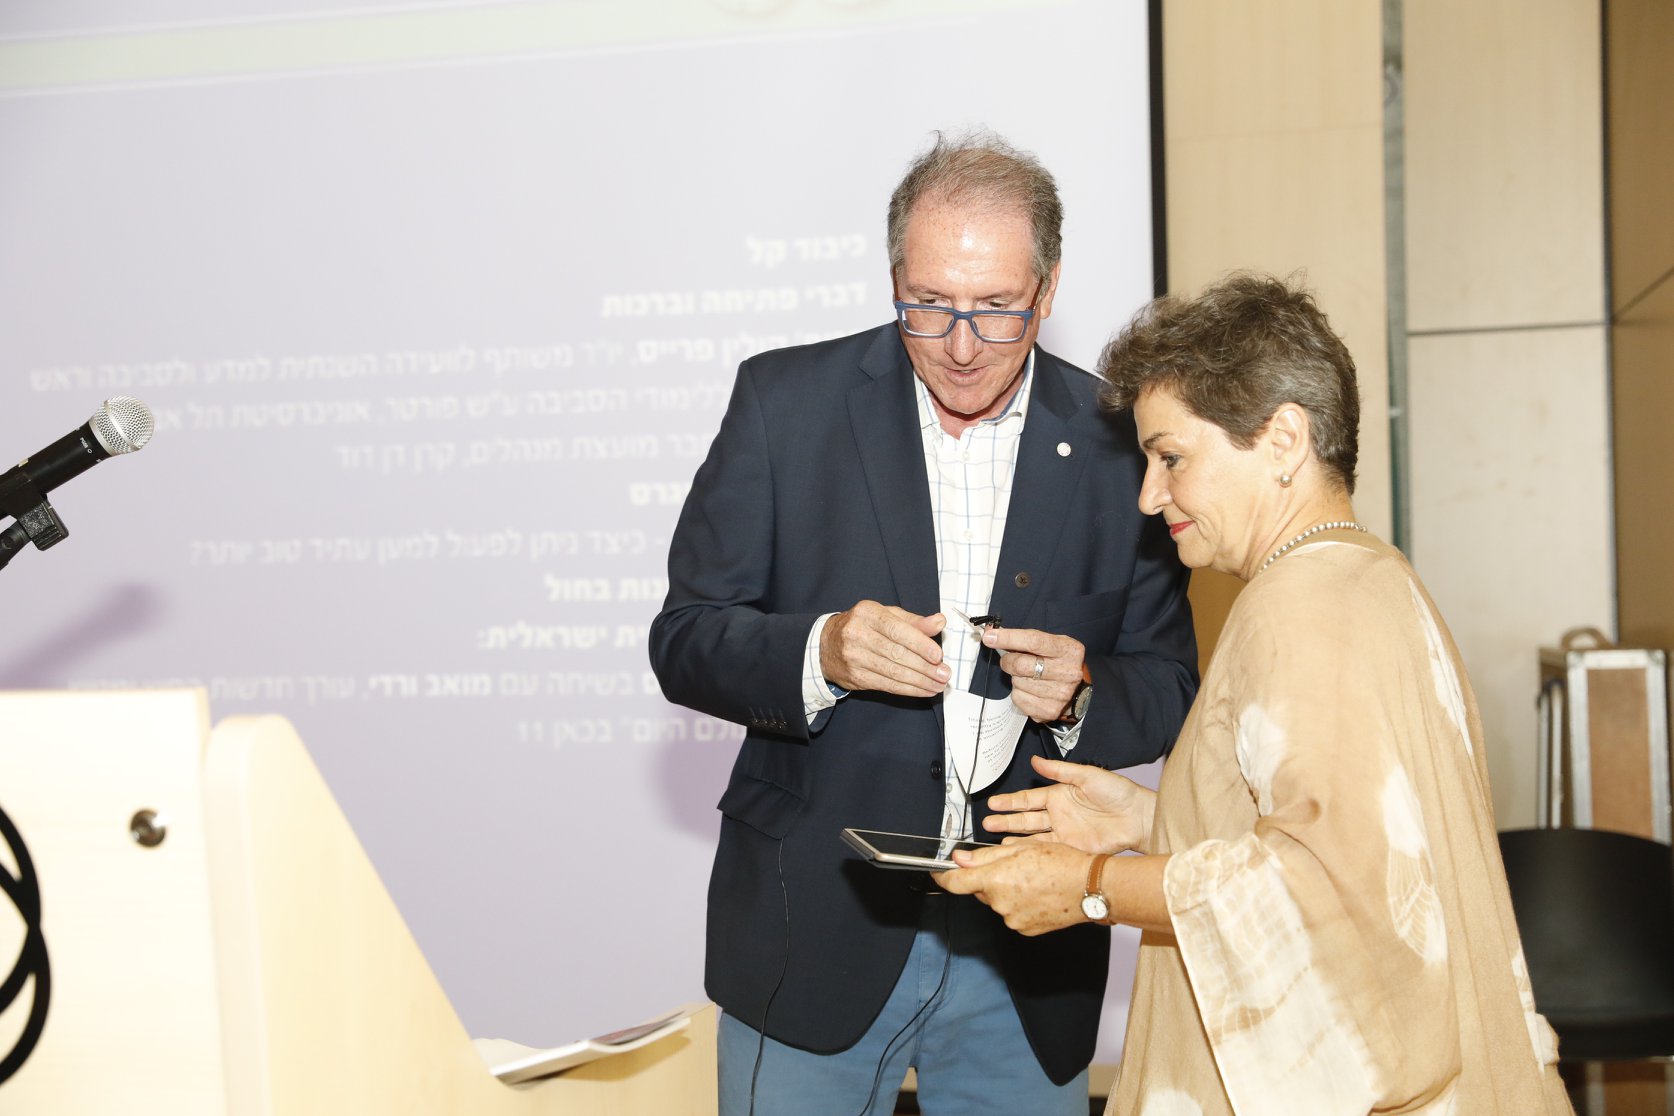 פרופ' קולין פרייס וכריסטיאנה פיגראס בערב הפתיחה של הועידה. צילום: האגודה הישראלית לאקולוגיה ומדעי הסביבה